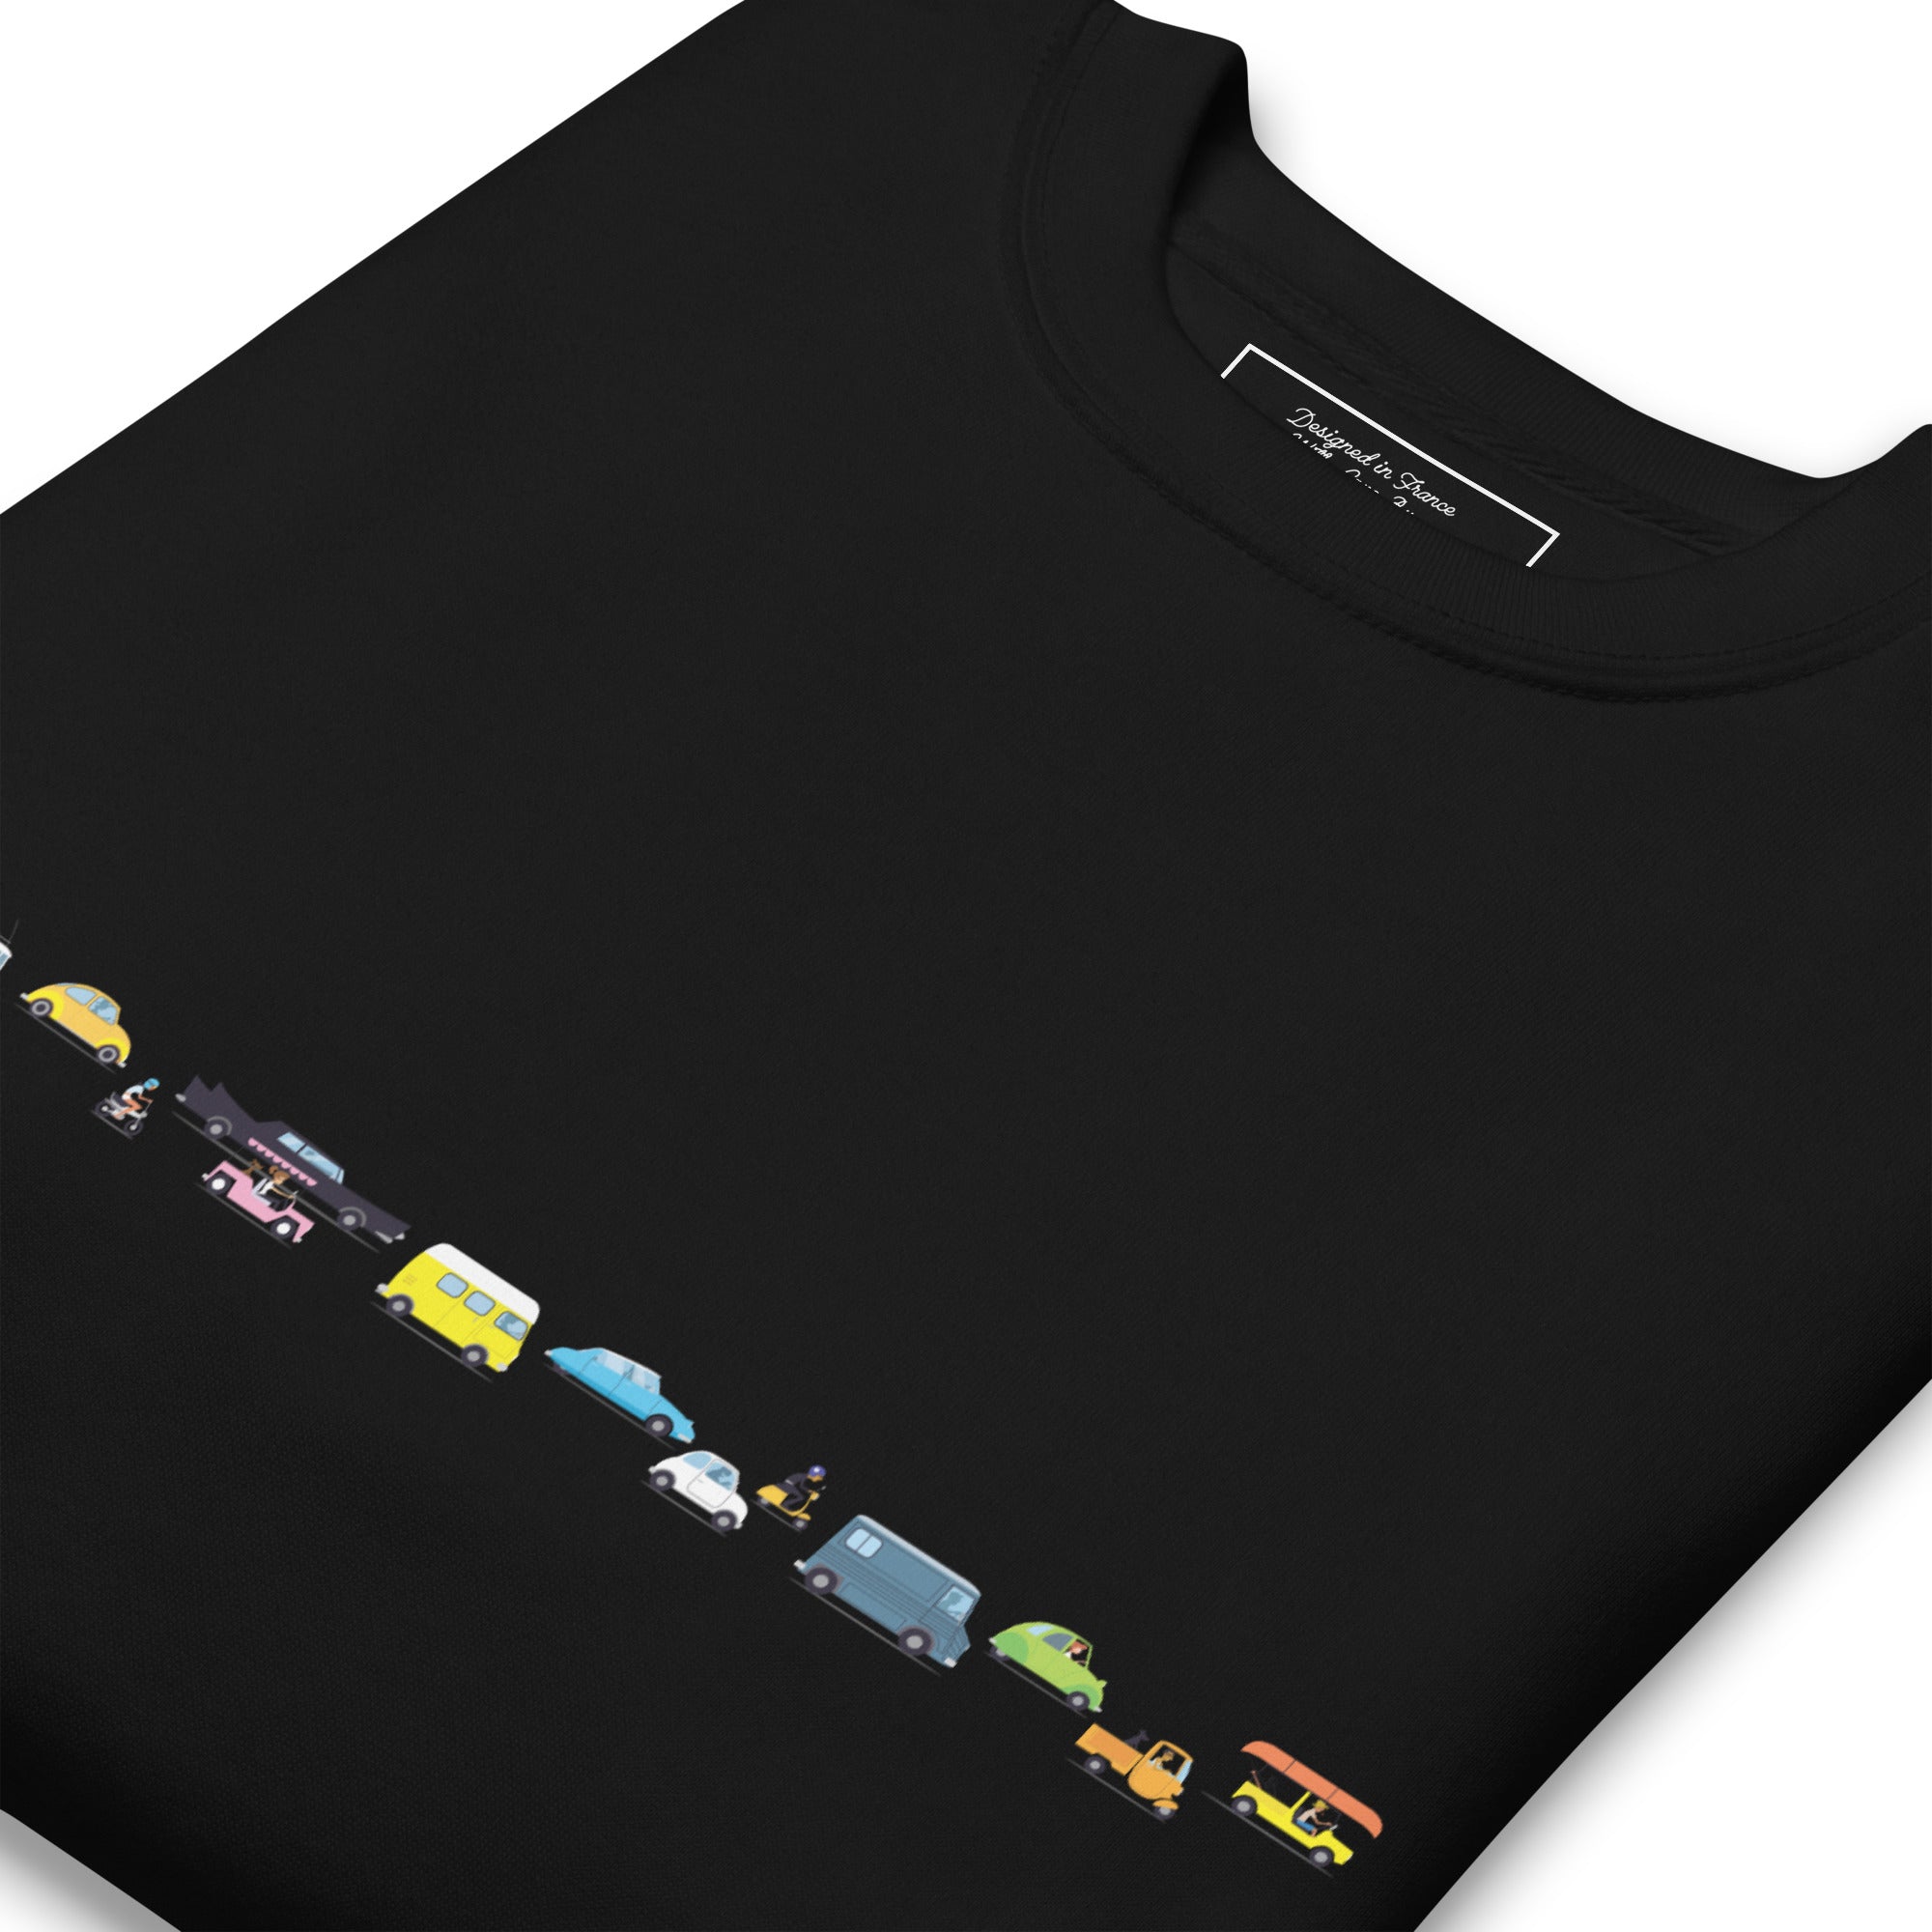 Sweatshirt premium unisexe Vintage Cars Traffic Jam